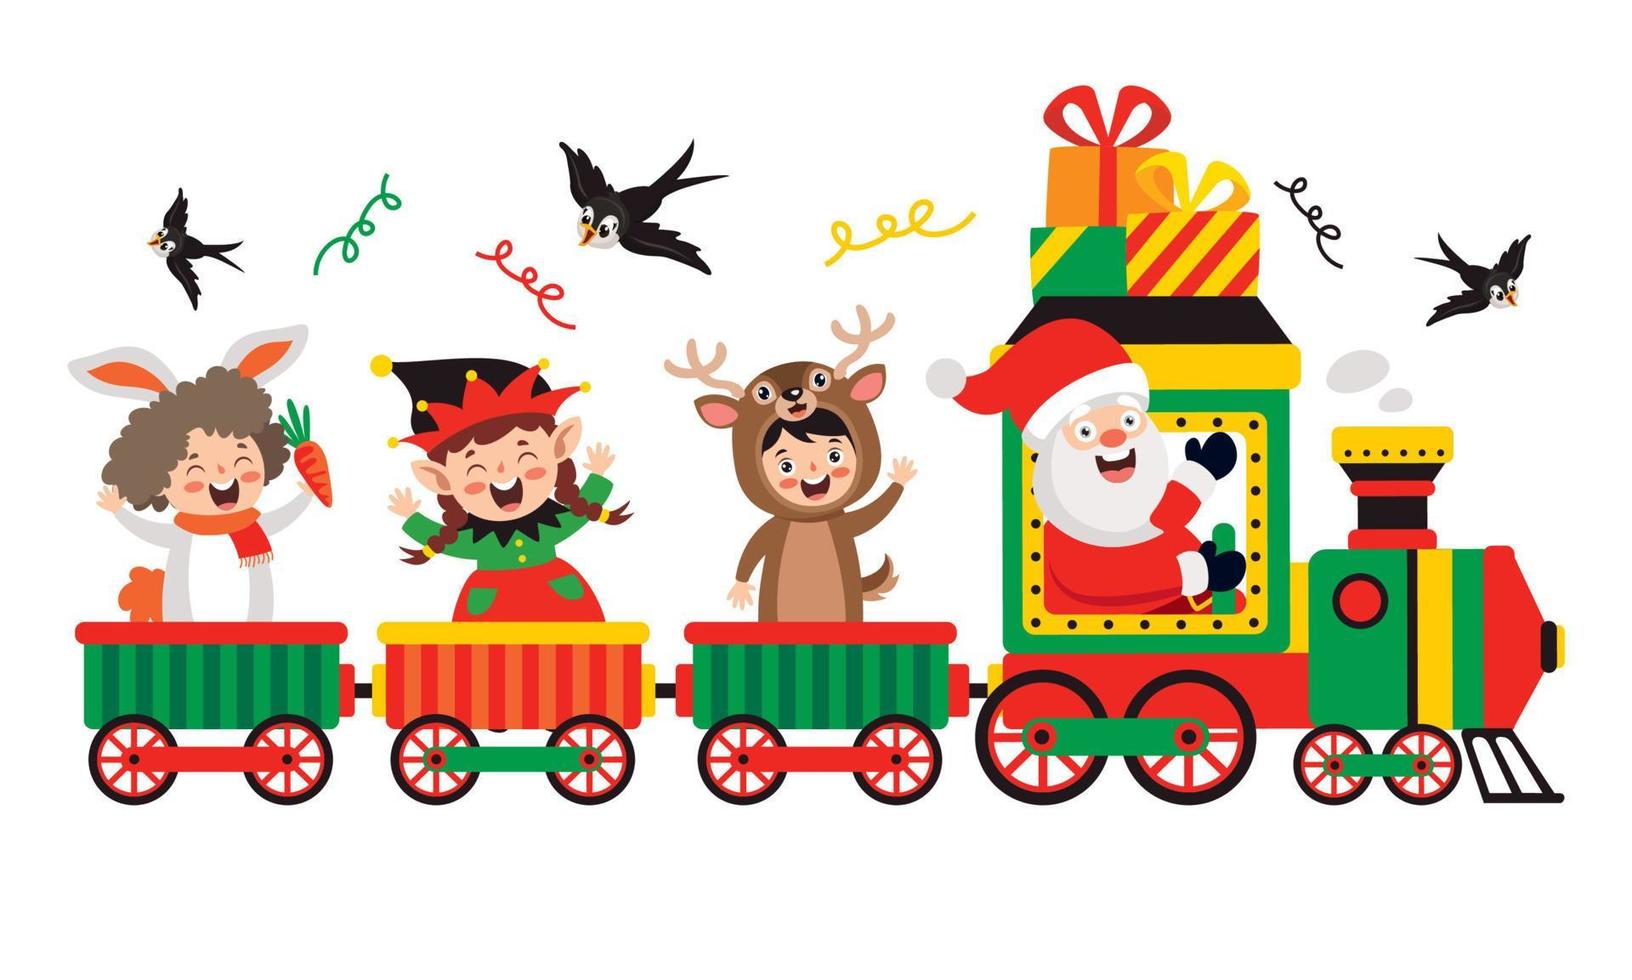 Natale con Santa Claus nel treno vettore